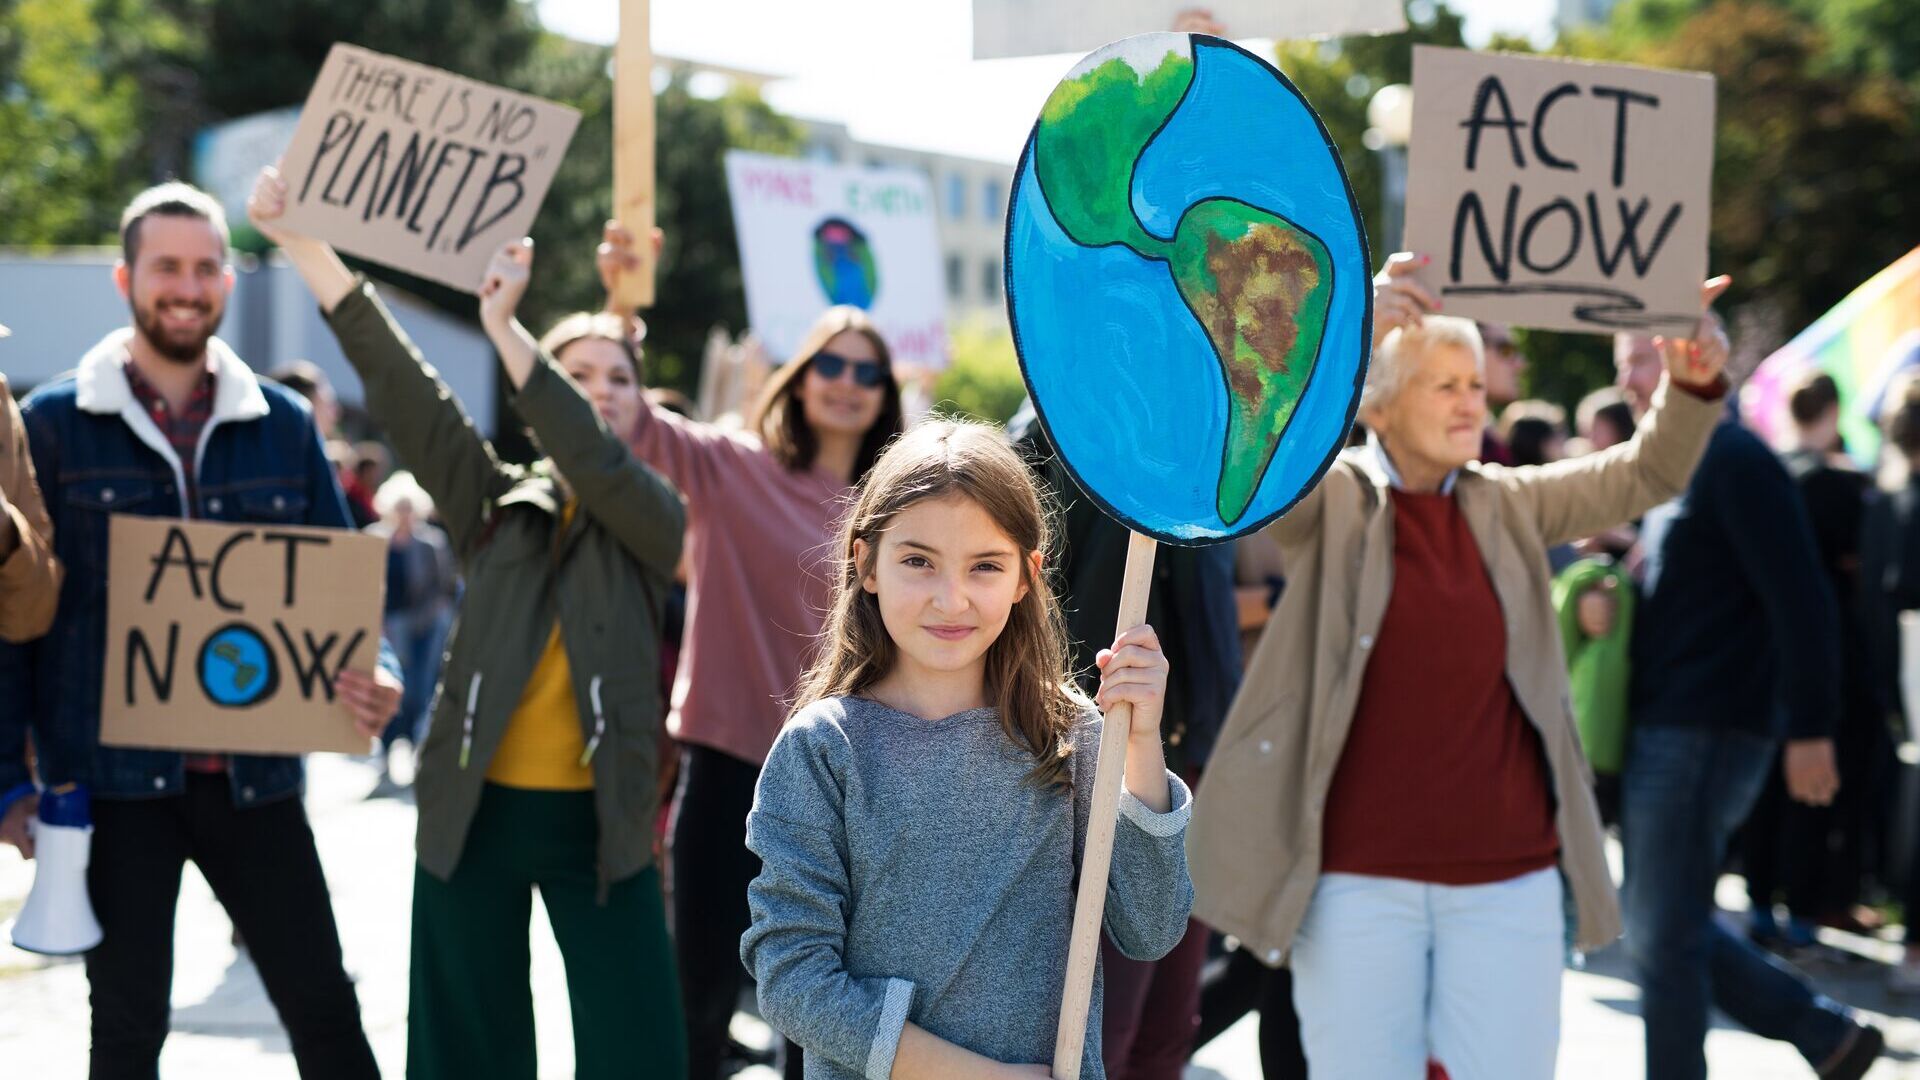 Klímaváltozás: az aktivisták nagyon gyors cselekvésre szólítanak fel